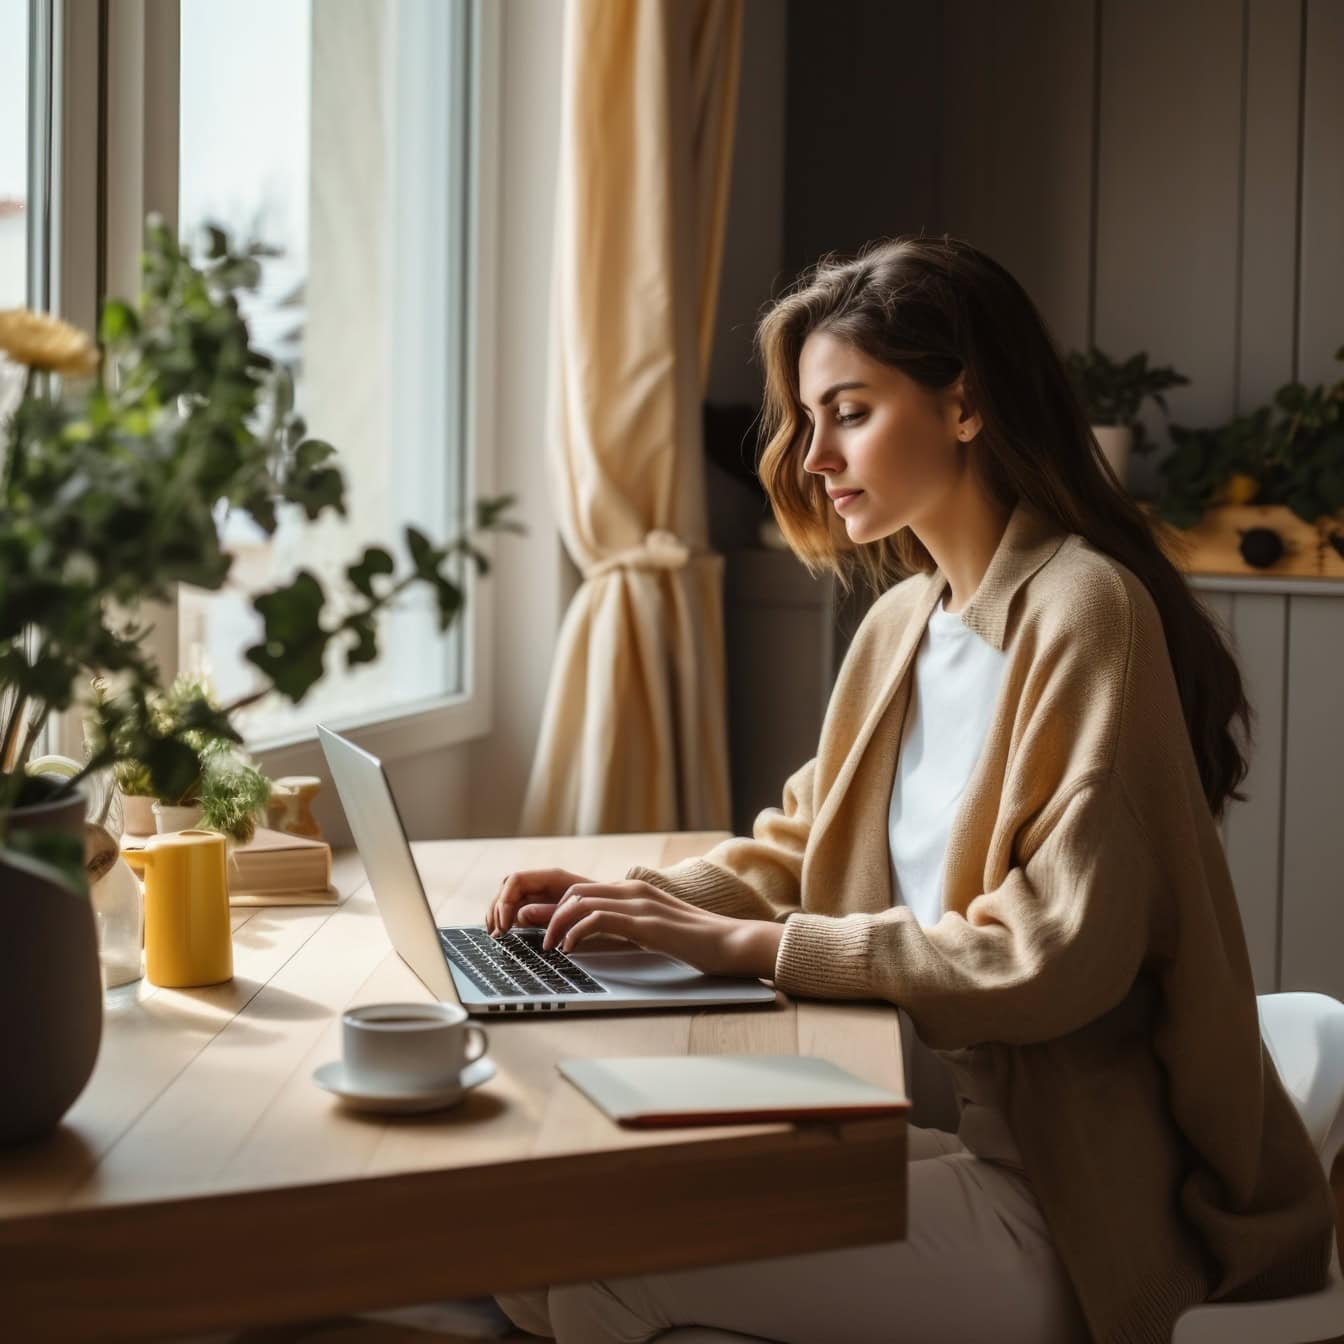 En forretningskvinne som sitter ved et bord ved hjelp av en bærbar datamaskin og jobber eksternt hjemmefra som Internett-gründer